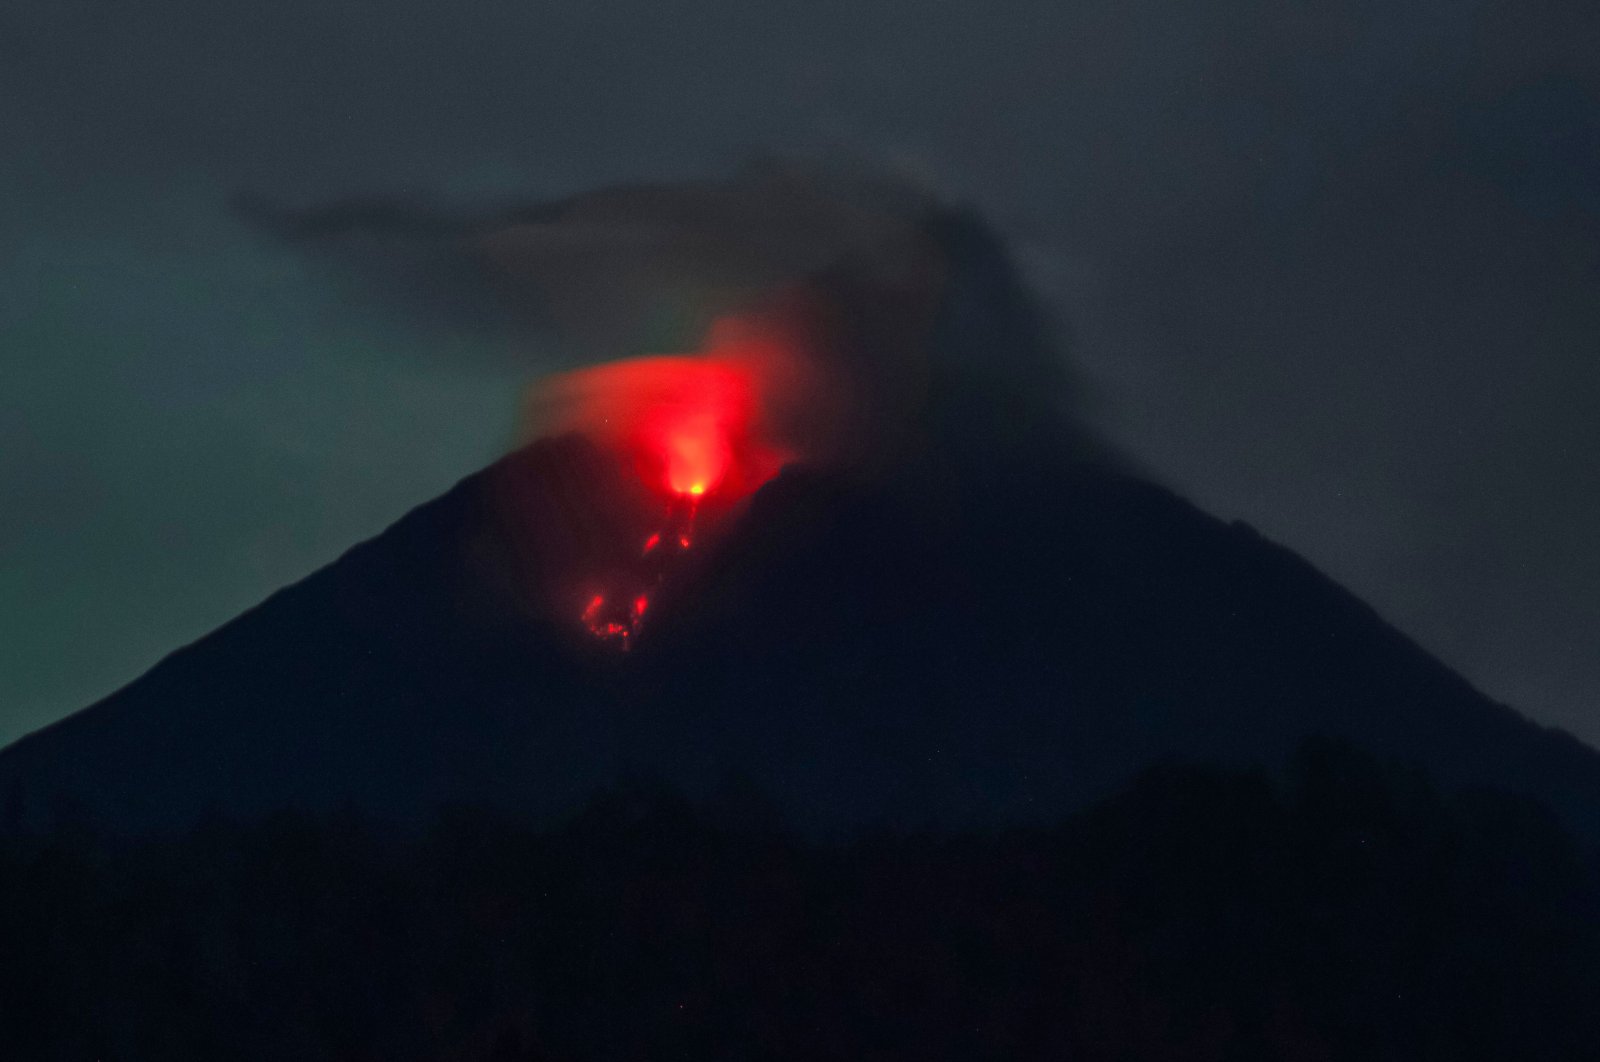 Korban tewas mencapai 34 setelah gunung berapi Semeru meletus di Indonesia